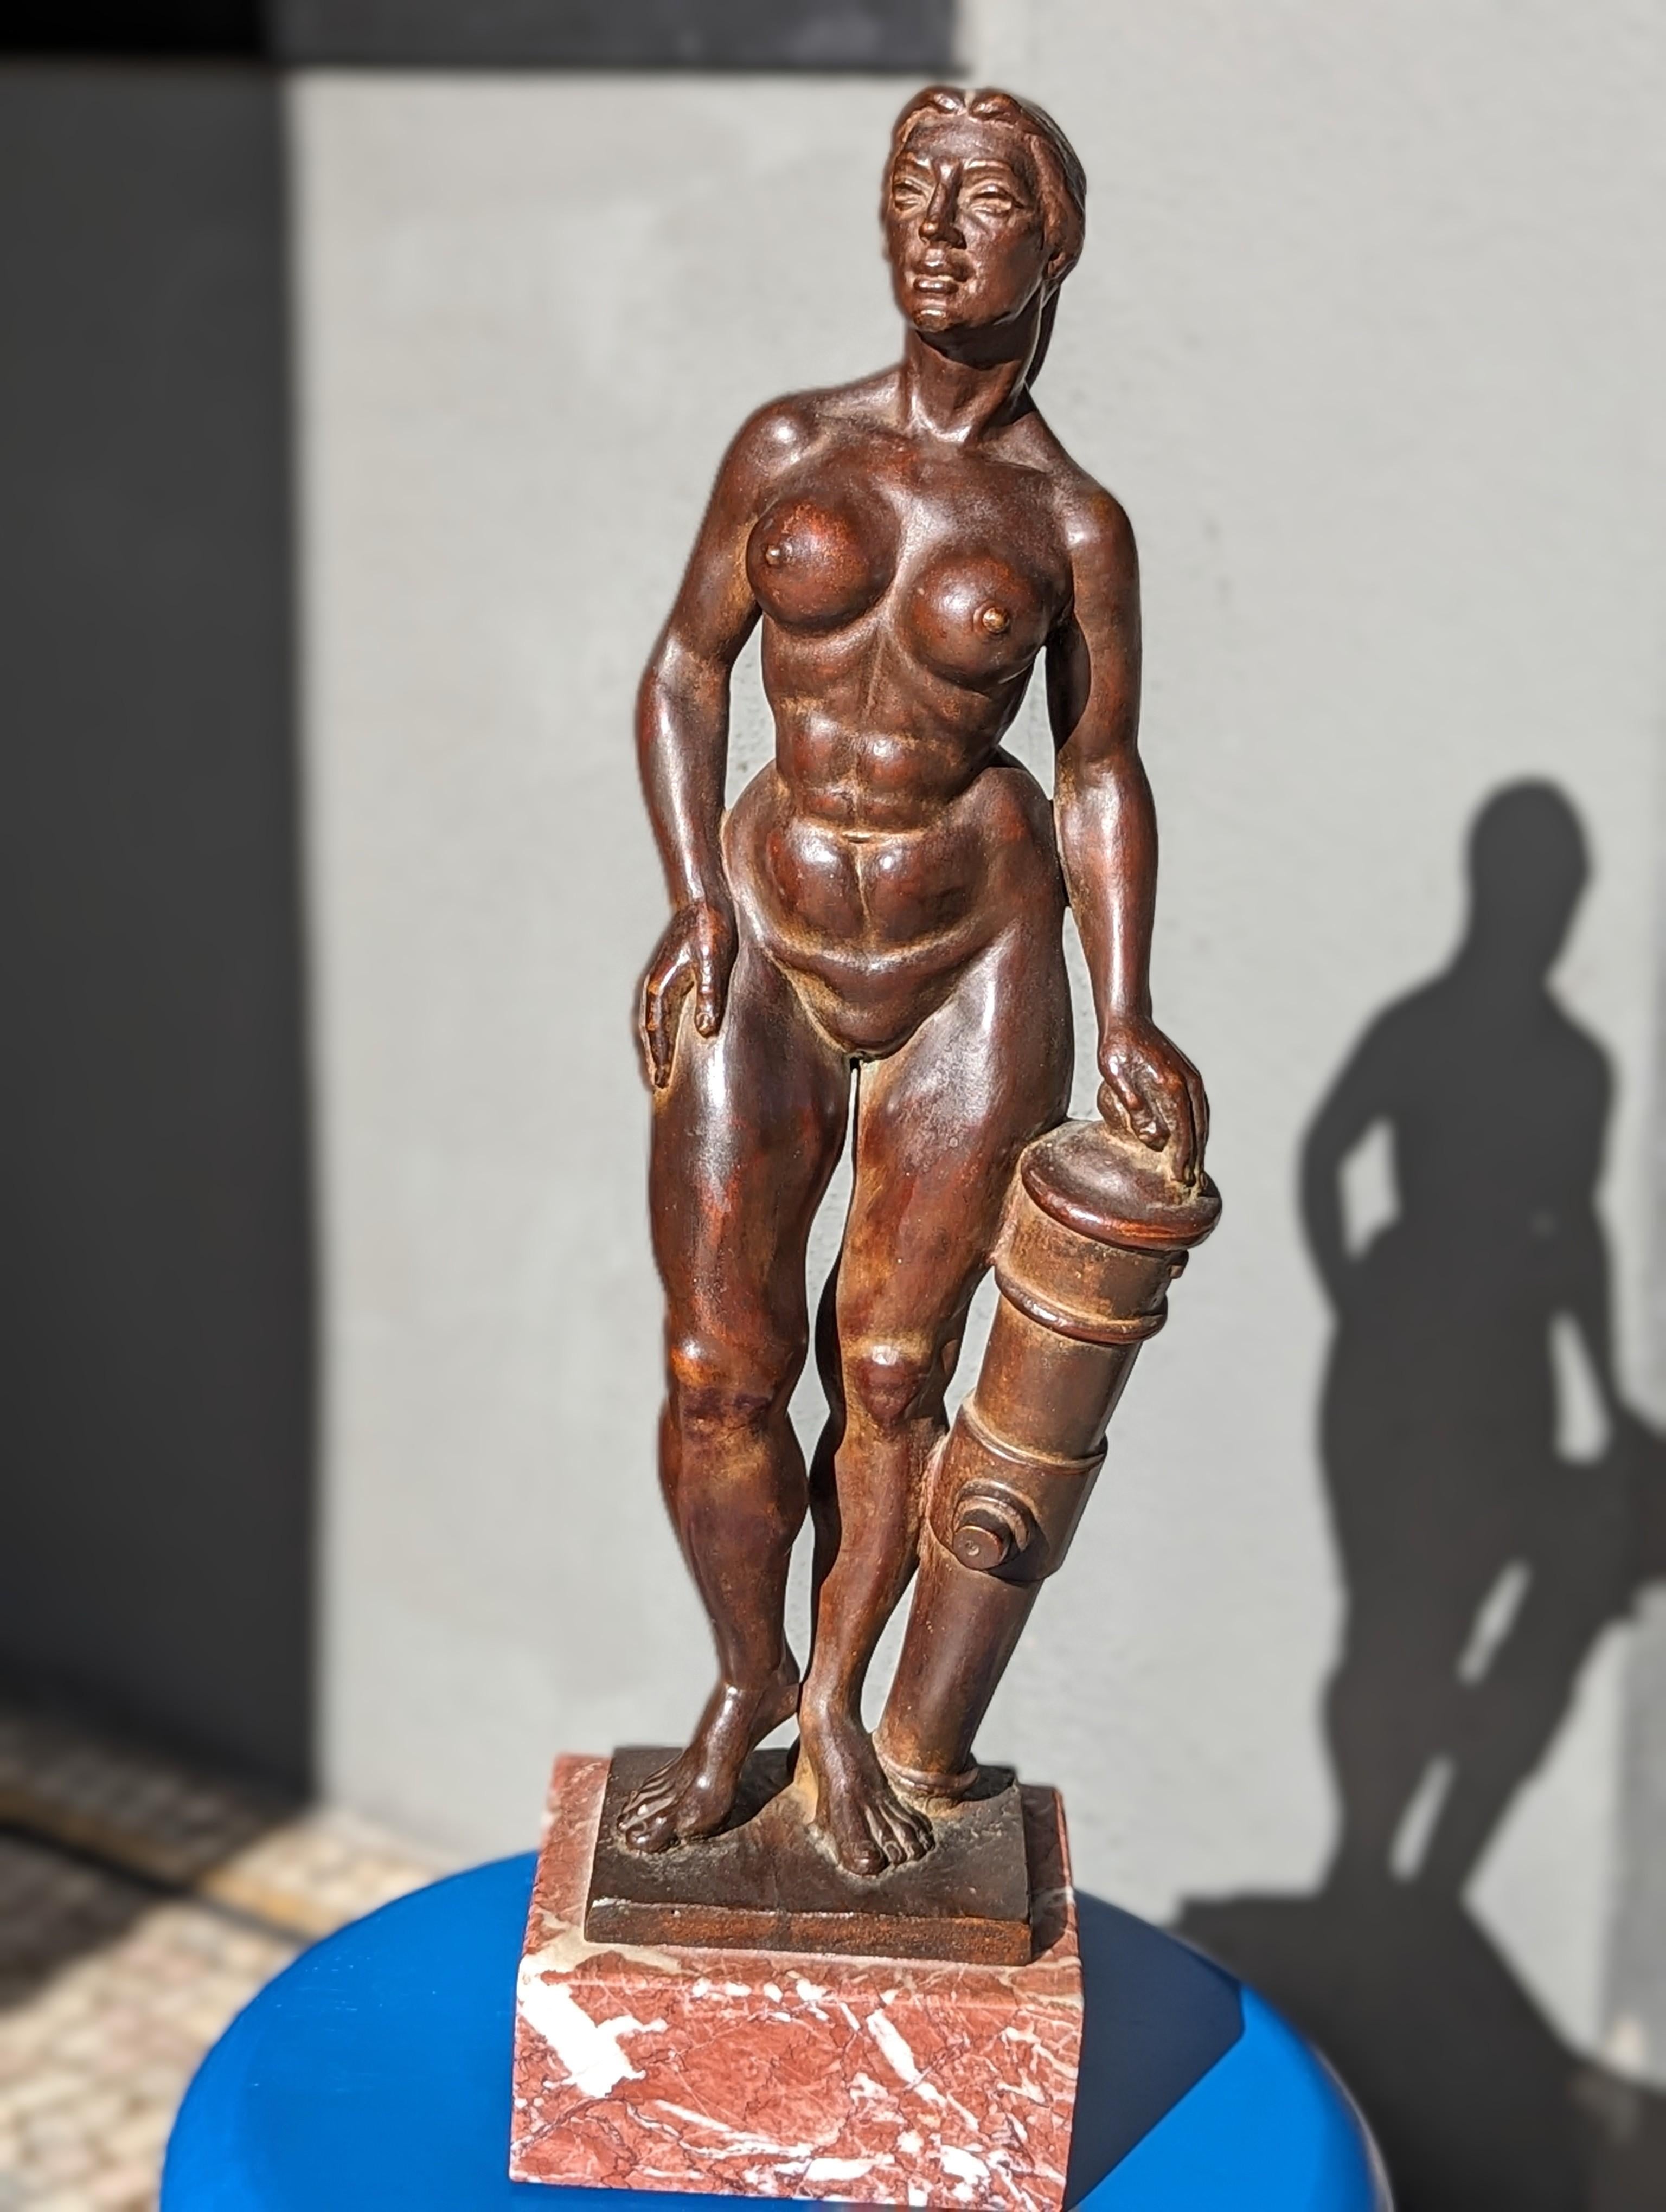 Klassische weibliche Form in Bronze auf einem Marmorsockel, signiert und datiert 1970 
Was wäre eine furchtlose Muse ohne eine treue Kanone? Dieses hier glänzt wie altes Gold, während es an ihrer Seite ruht, ein stilles Versprechen für wilde